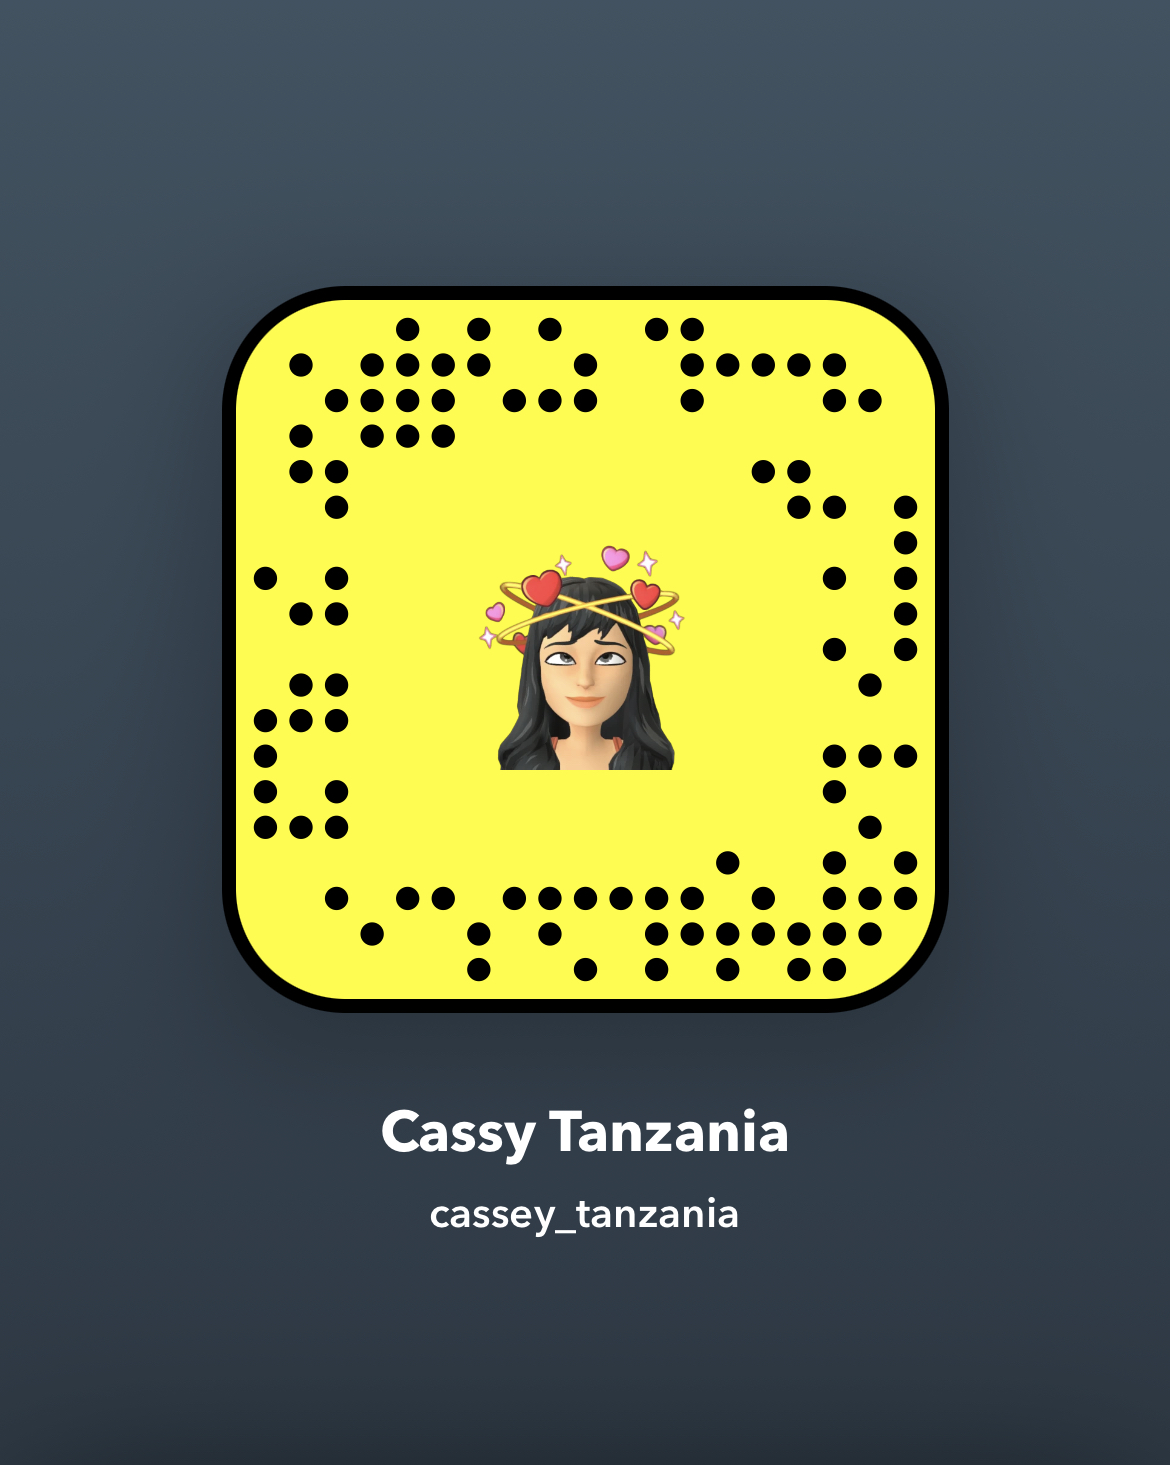 Cassy Tanzania